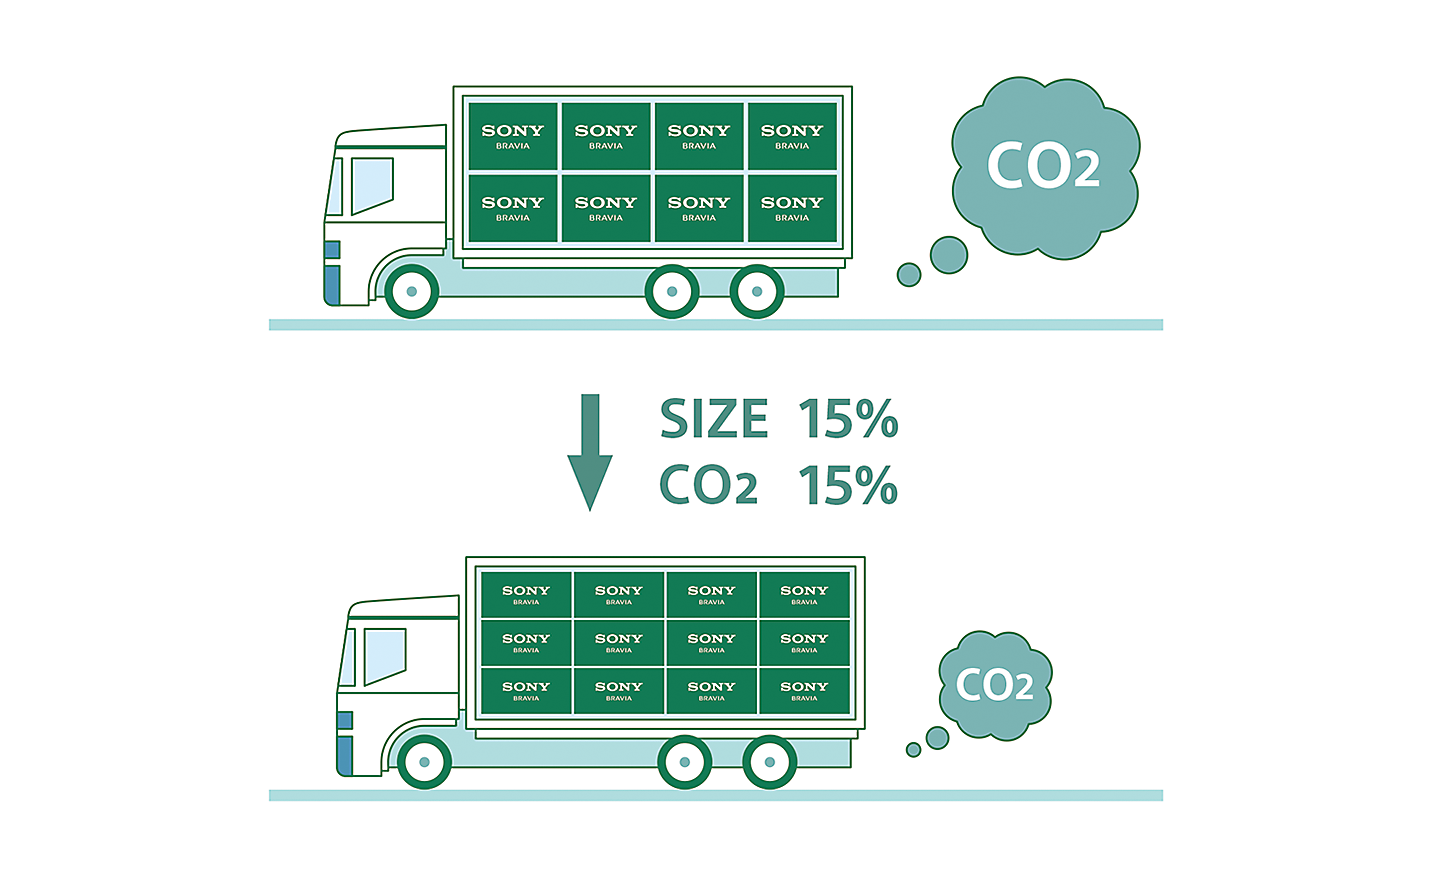 Γραφικό δύο φορτηγών που δείχνει πώς η μείωση της συσκευασίας συμβάλλει στη μείωση των εκπομπών CO2 κατά τη μεταφορά.